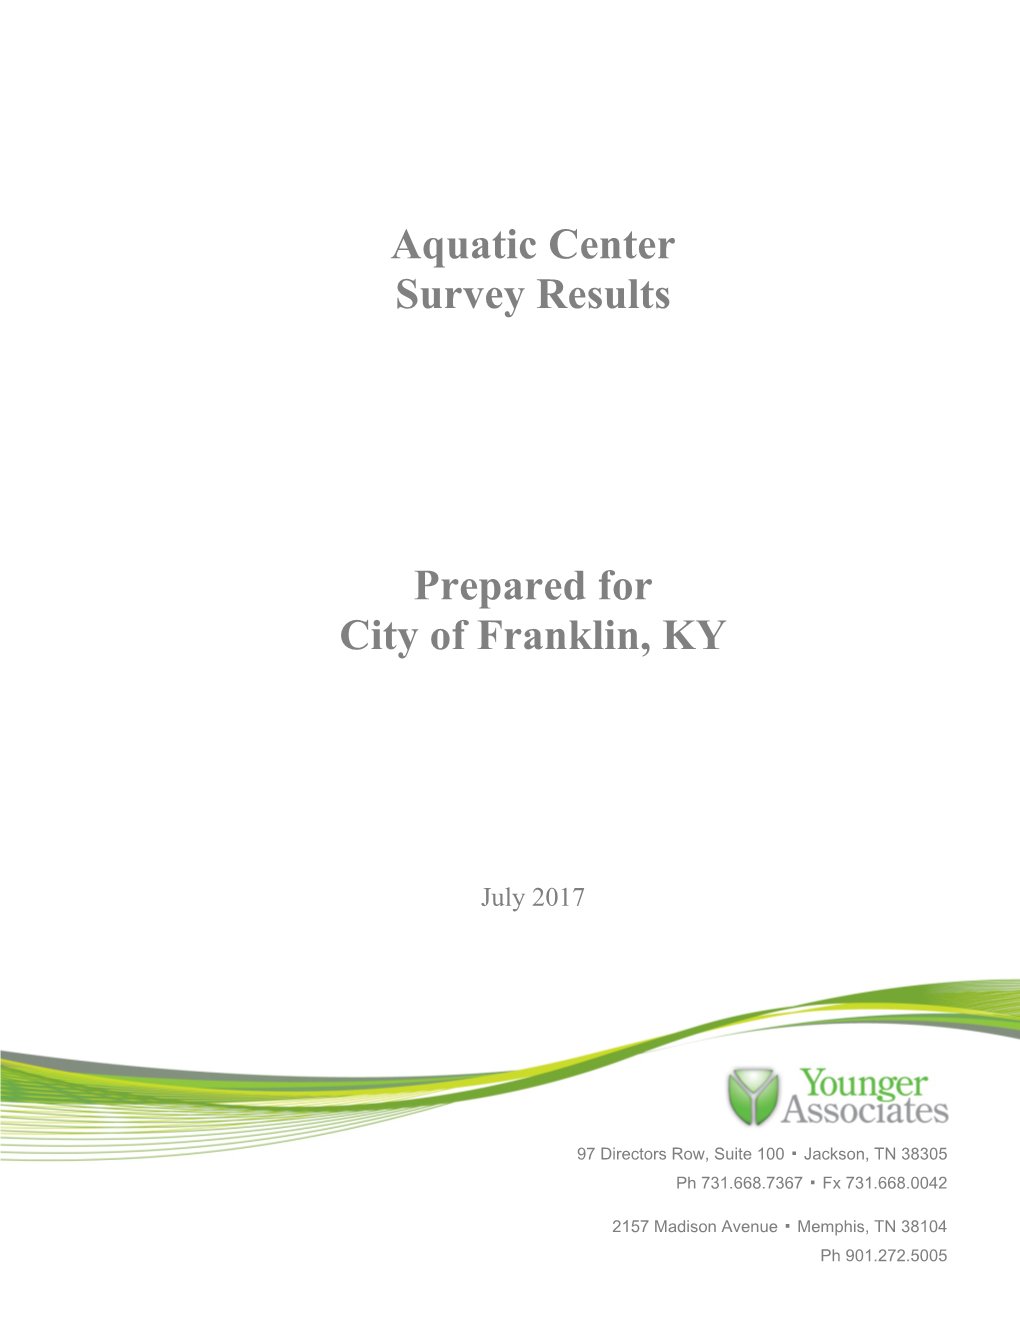 Aquatic Center Survey Results Prepared for City of Franklin, KY